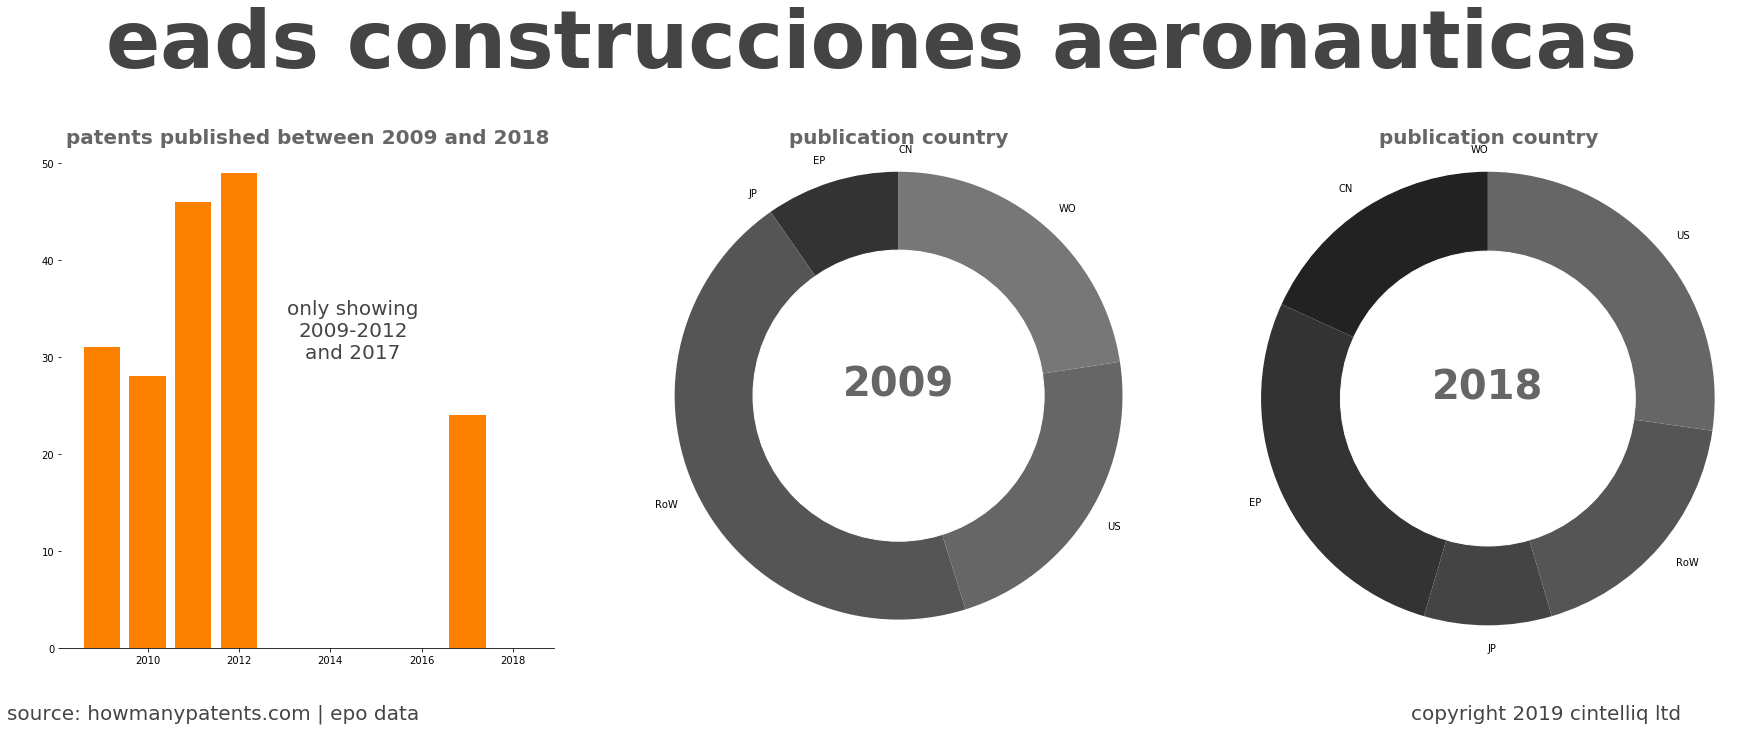 summary of patents for Eads Construcciones Aeronauticas